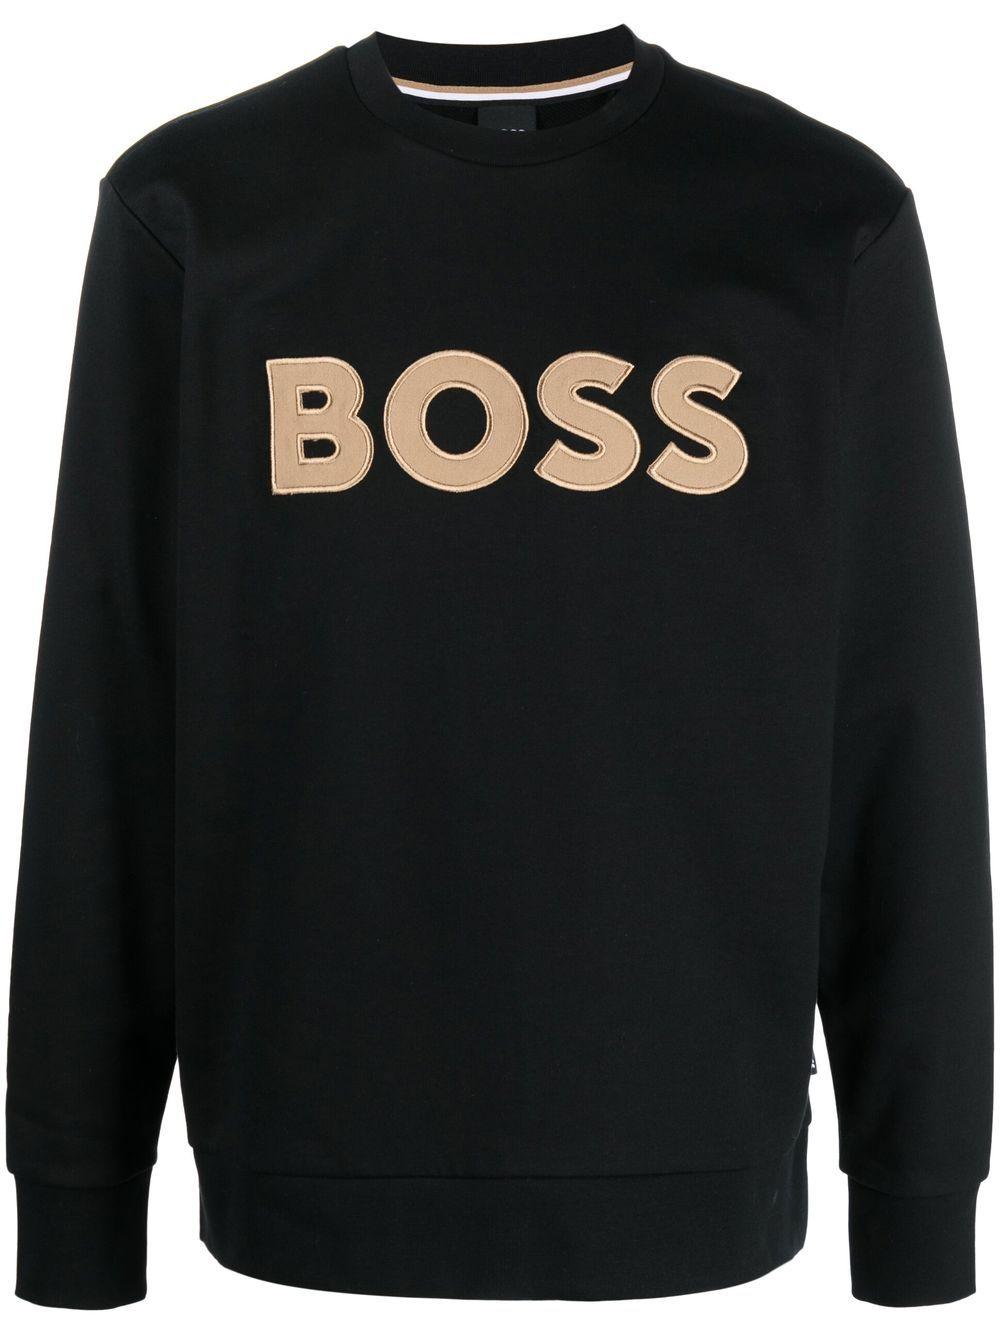 BOSS by HUGO BOSS Logo-embroidery Cotton Sweatshirt in Black for Men | Lyst